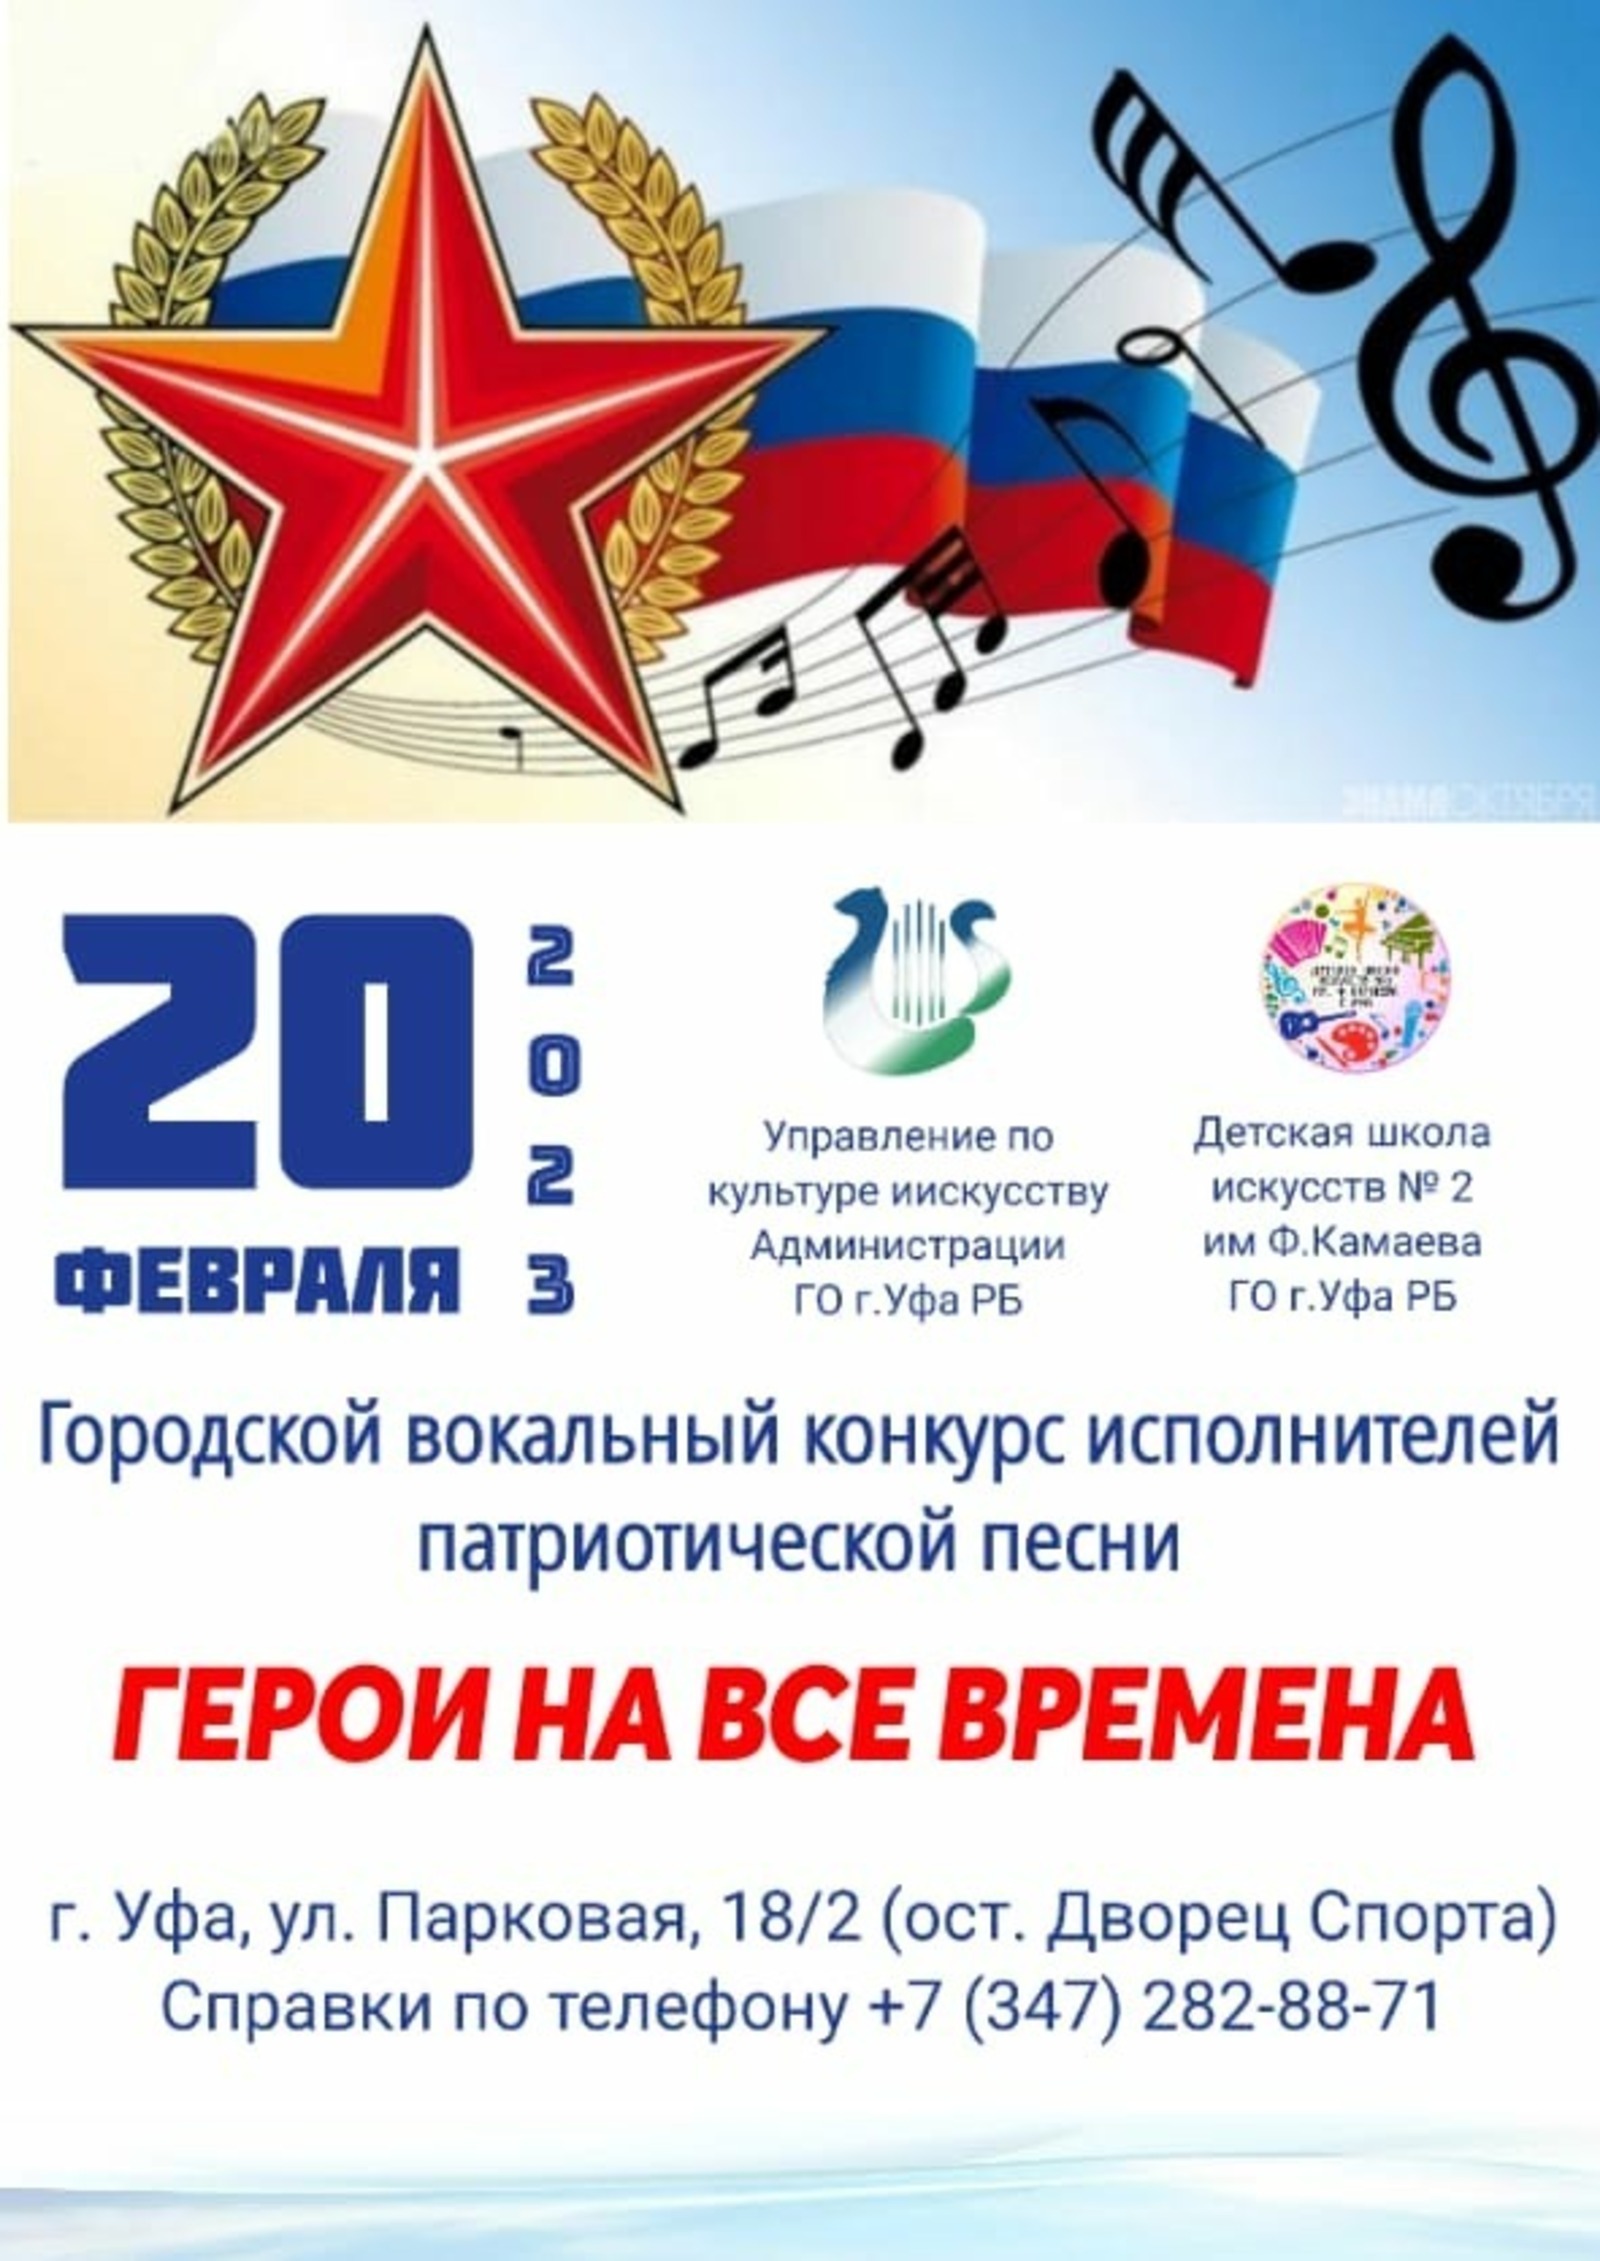 В Уфе состоится вокальный конкурс «Герои на все времена»